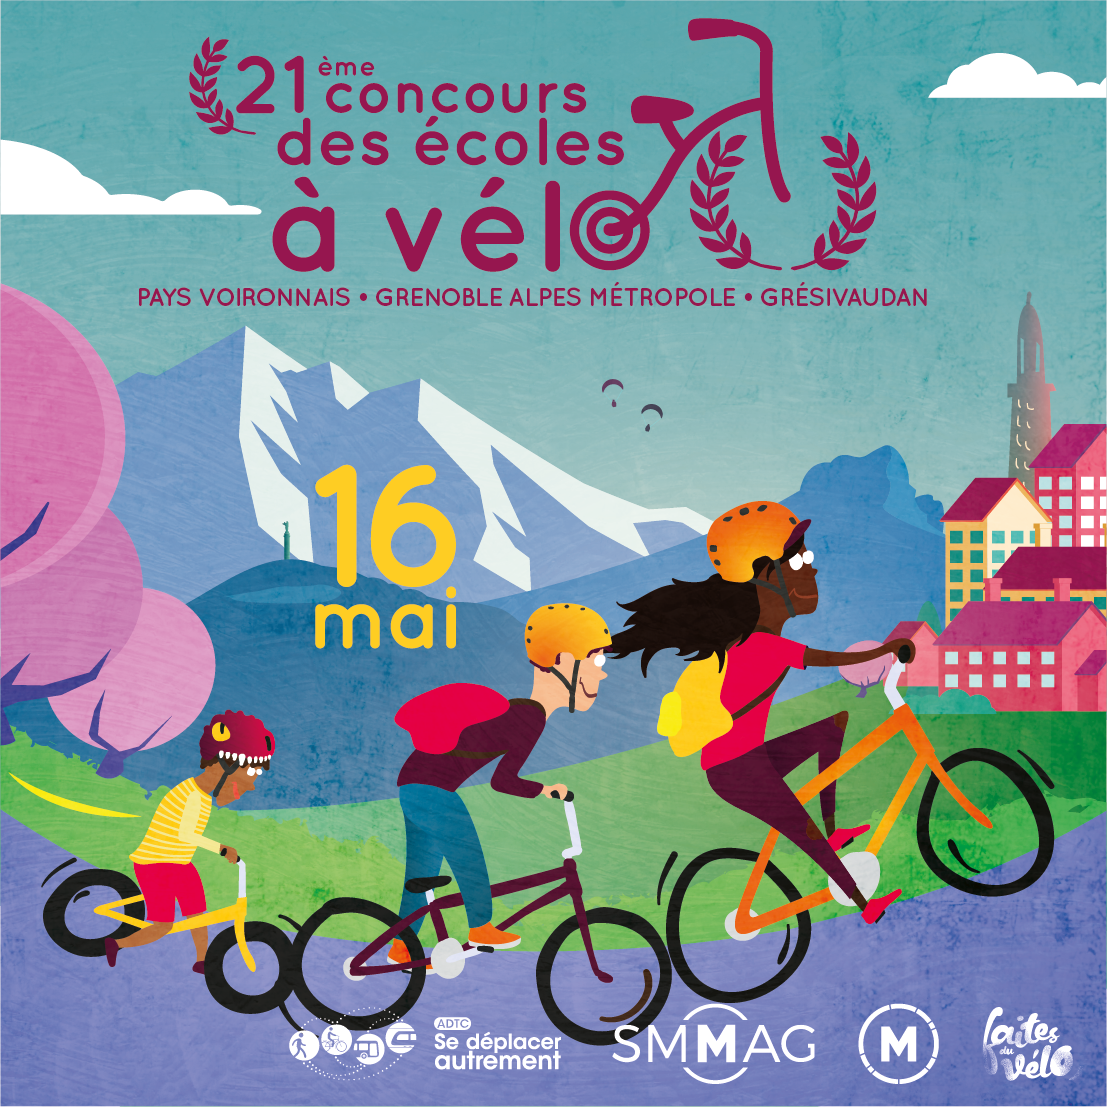 Communiqué de presse – Concours des écoles à vélo le 16 mai